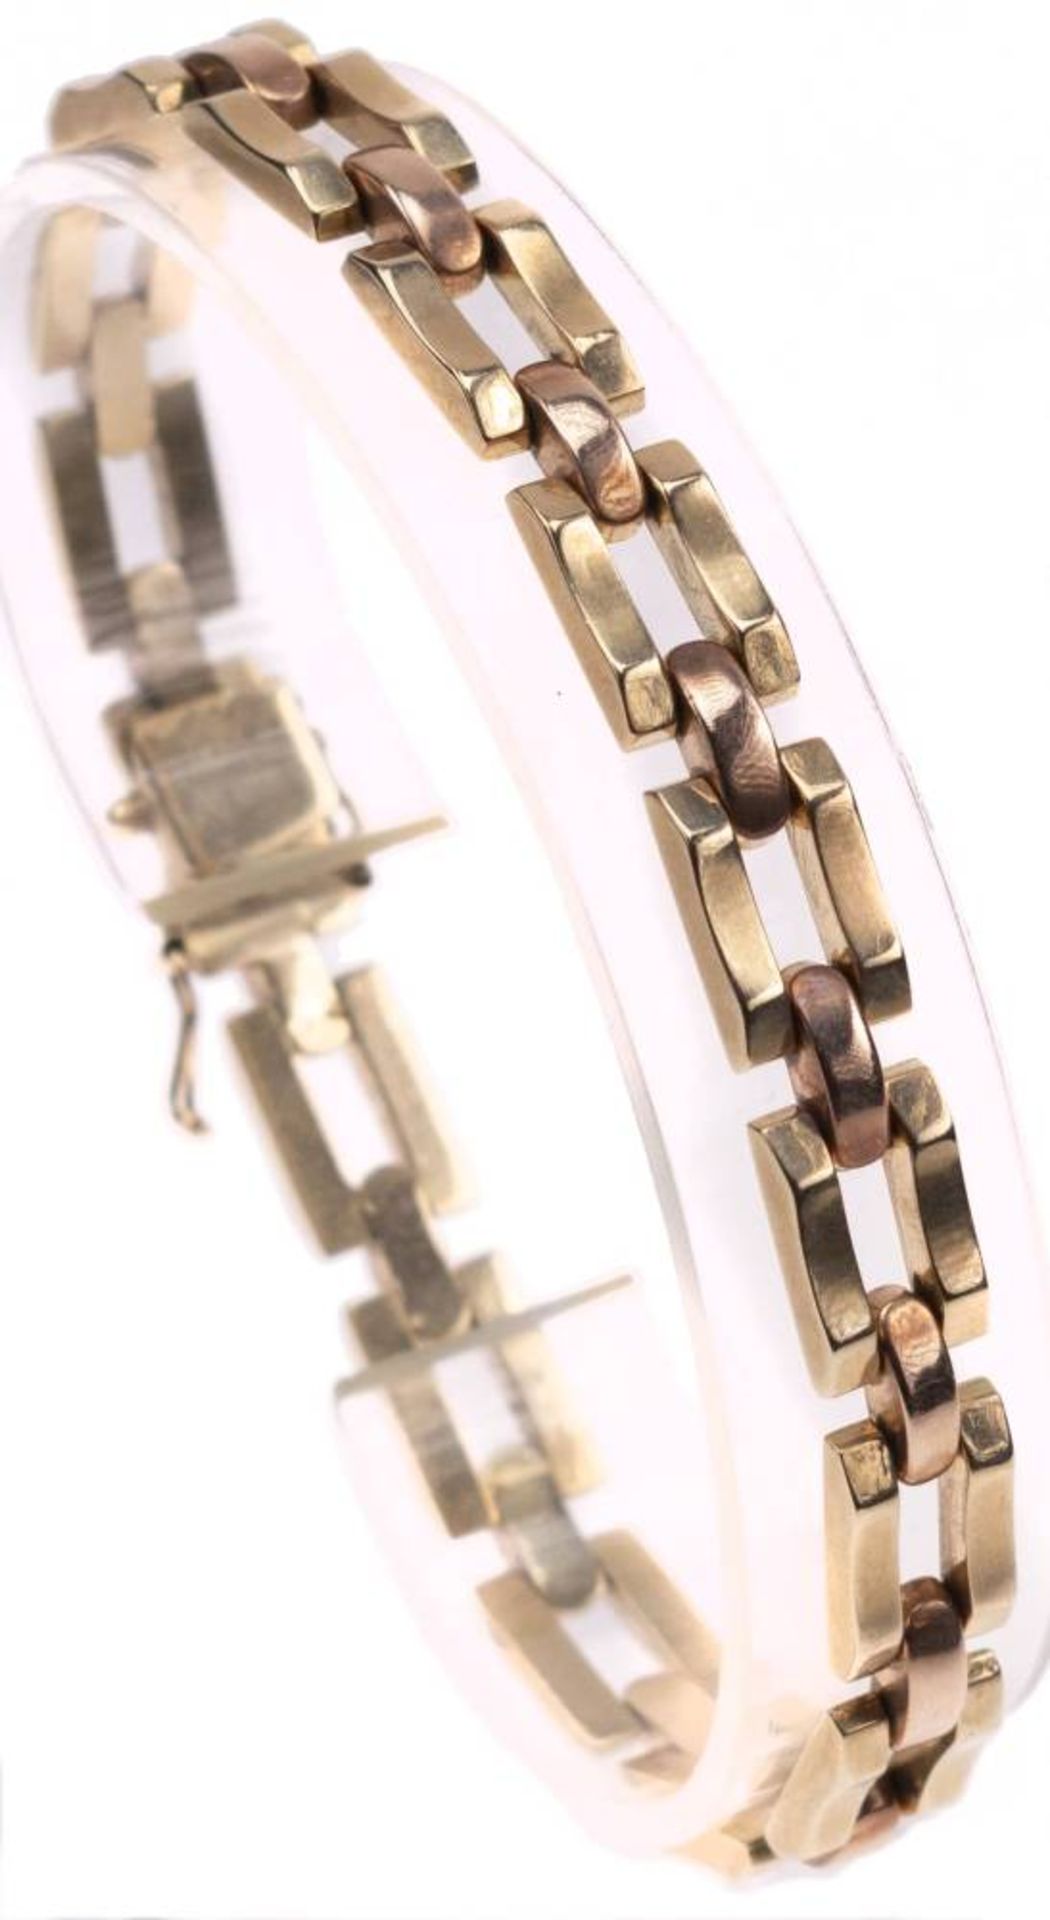 Armband, 585 Rosé- und Gelbgold, L. 20cm, ca. 14,53g. - Bild 2 aus 6